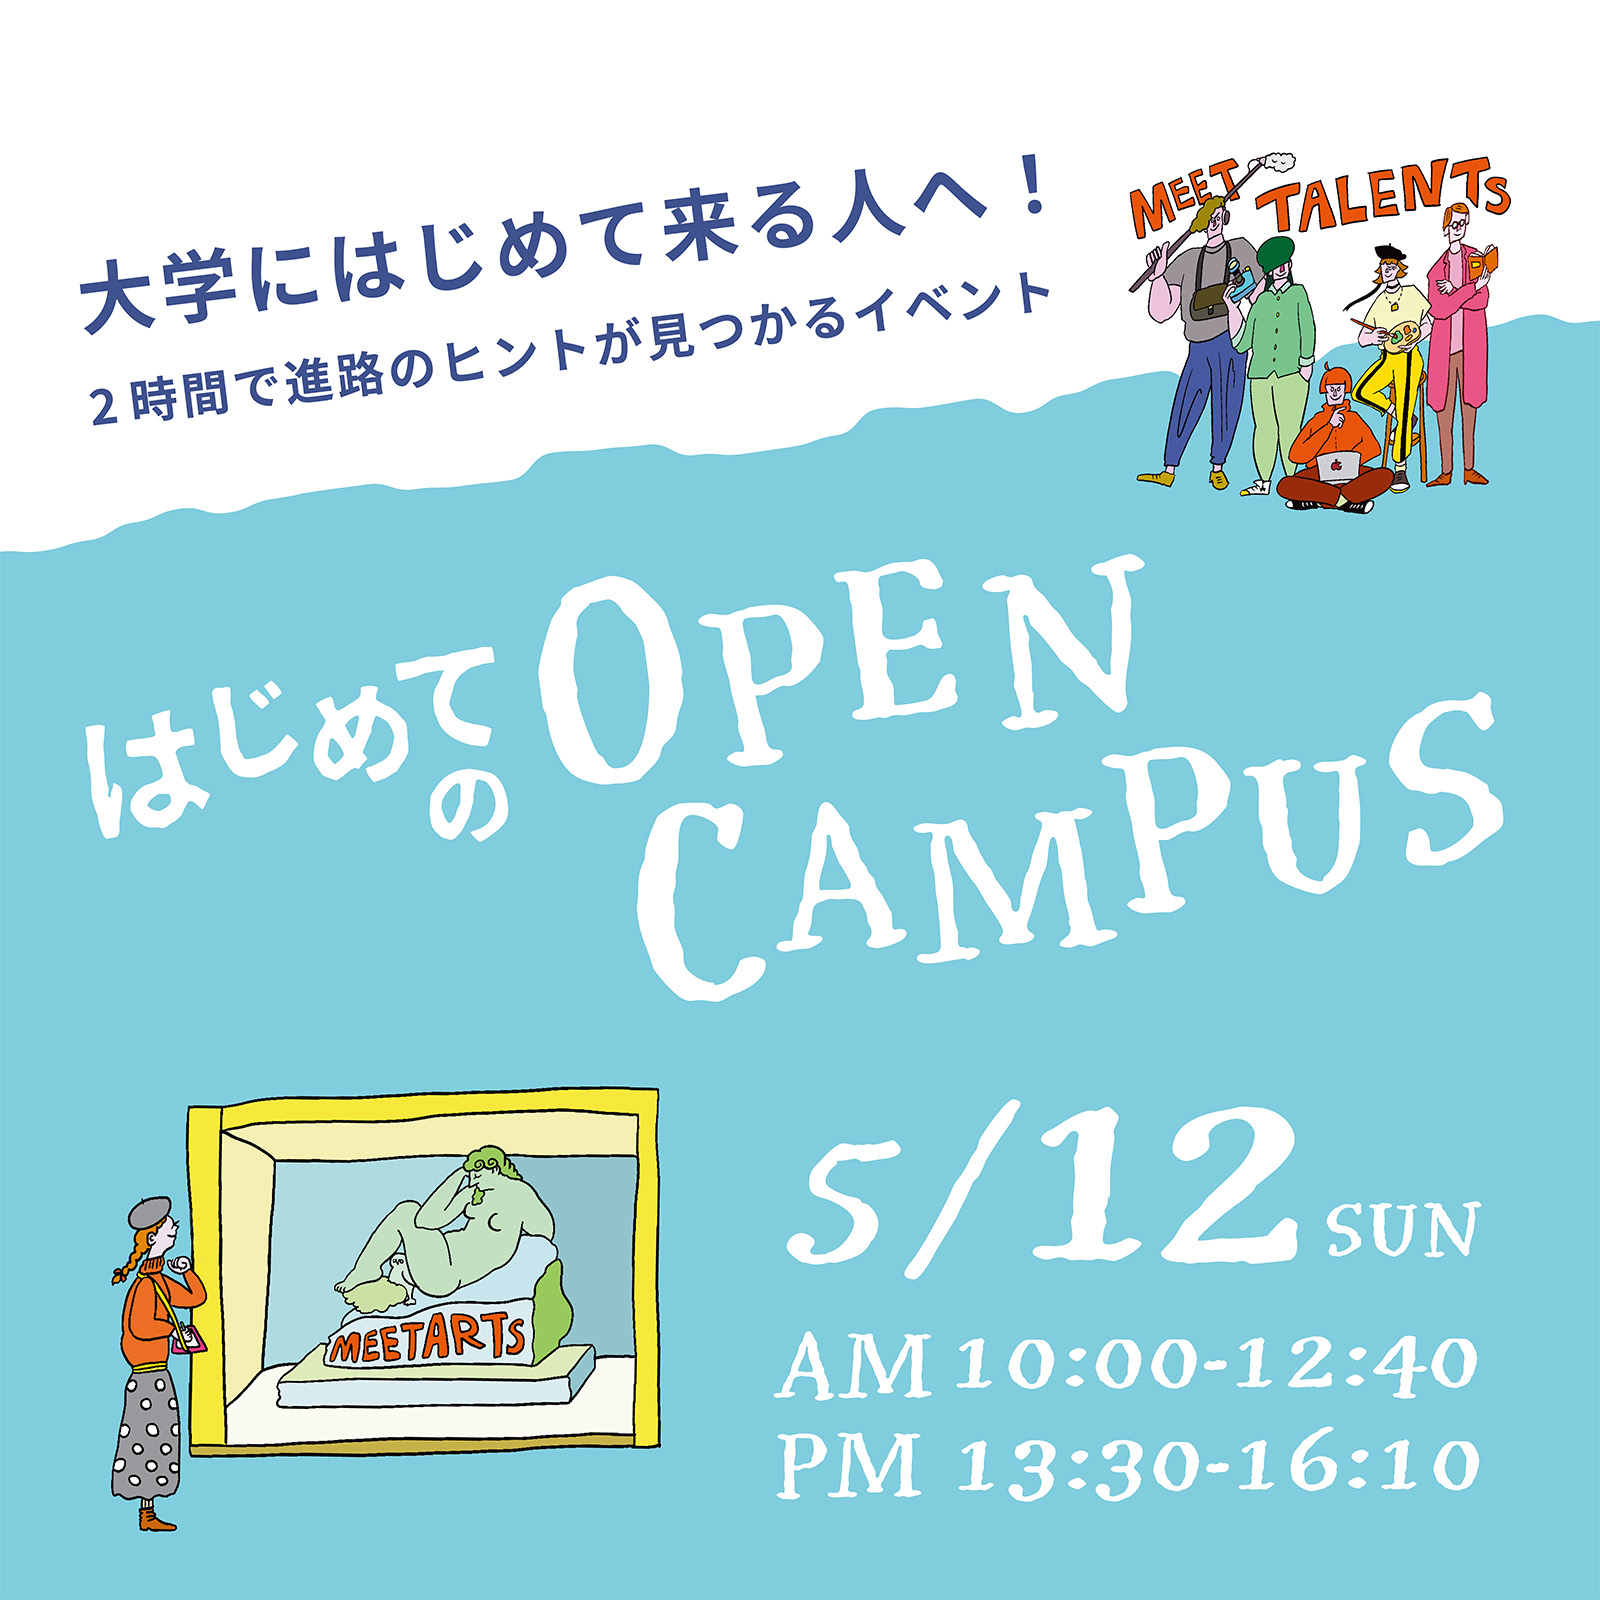 京都芸術大学のオープンキャンパス